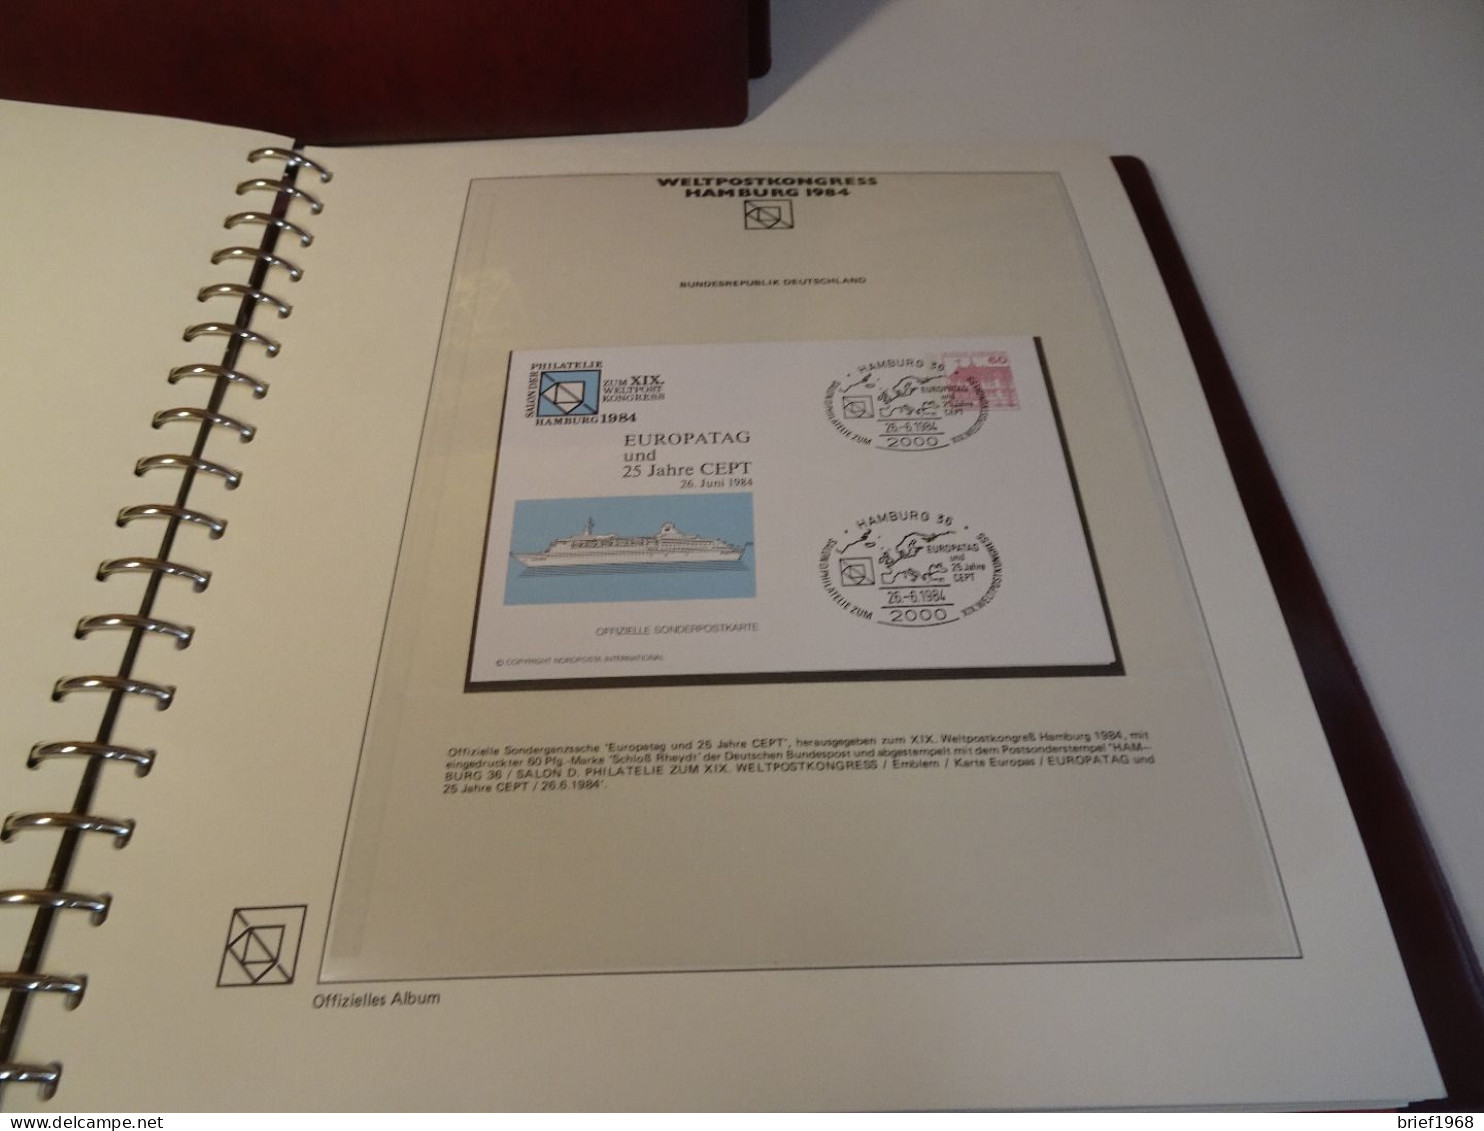 2 Bände UPU Weltpostkongress Hamburg 1984 (26039) - UPU (Wereldpostunie)